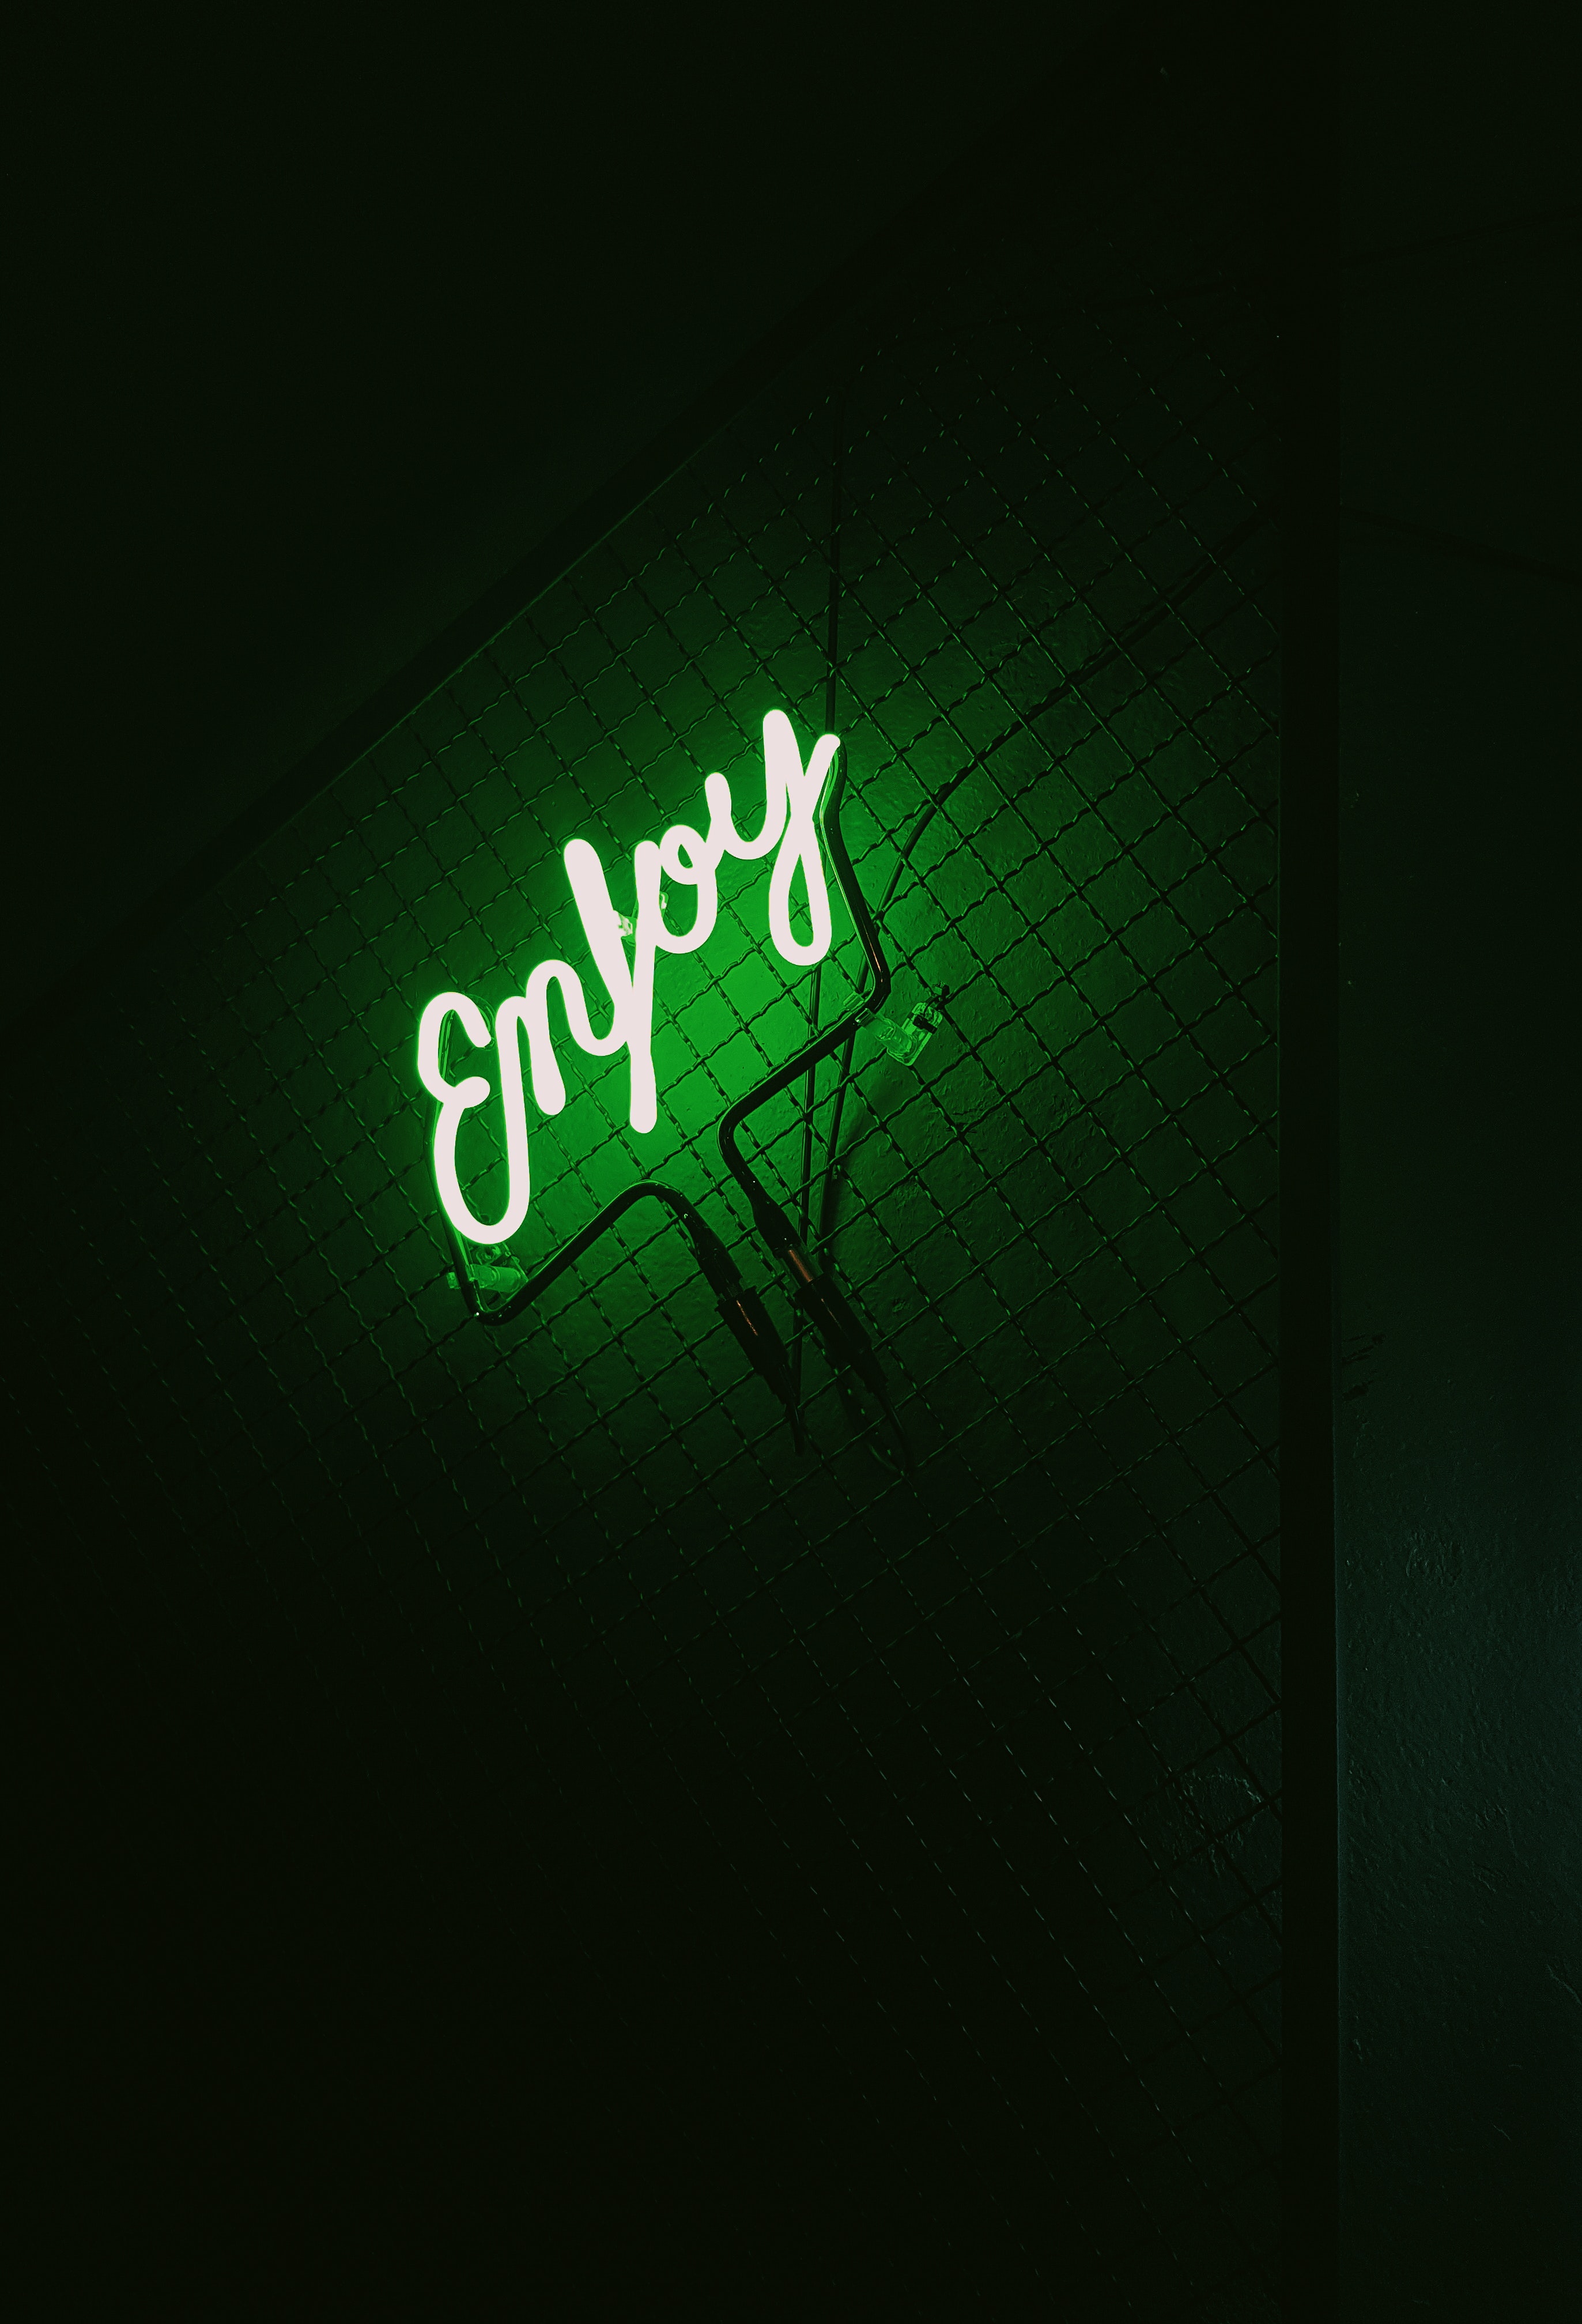 backlight, words, dark, neon, green, illumination, inscription Full HD